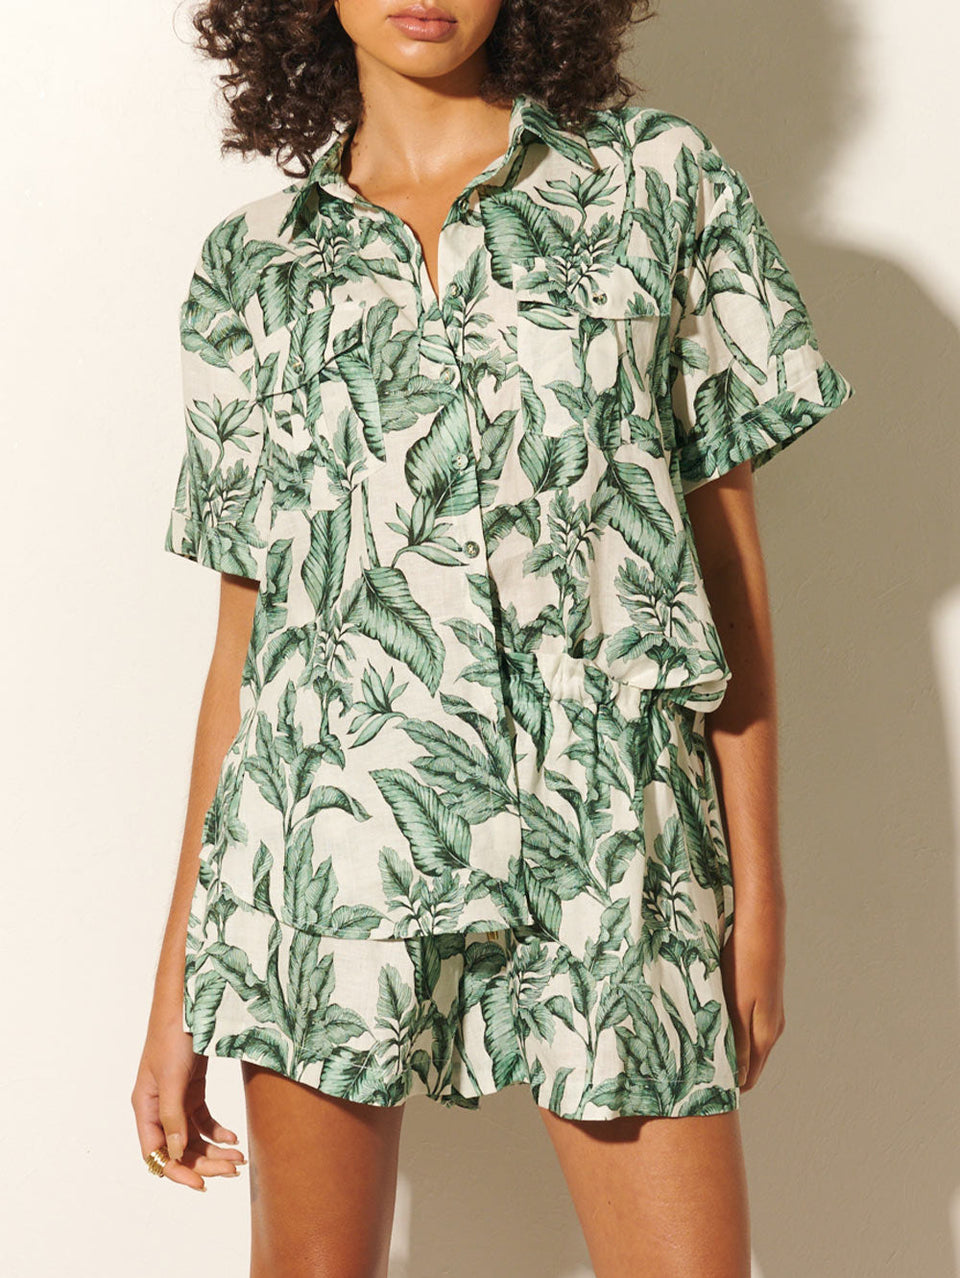 Tropico Shirt KIVARI | Model wears palm leaf print shorts